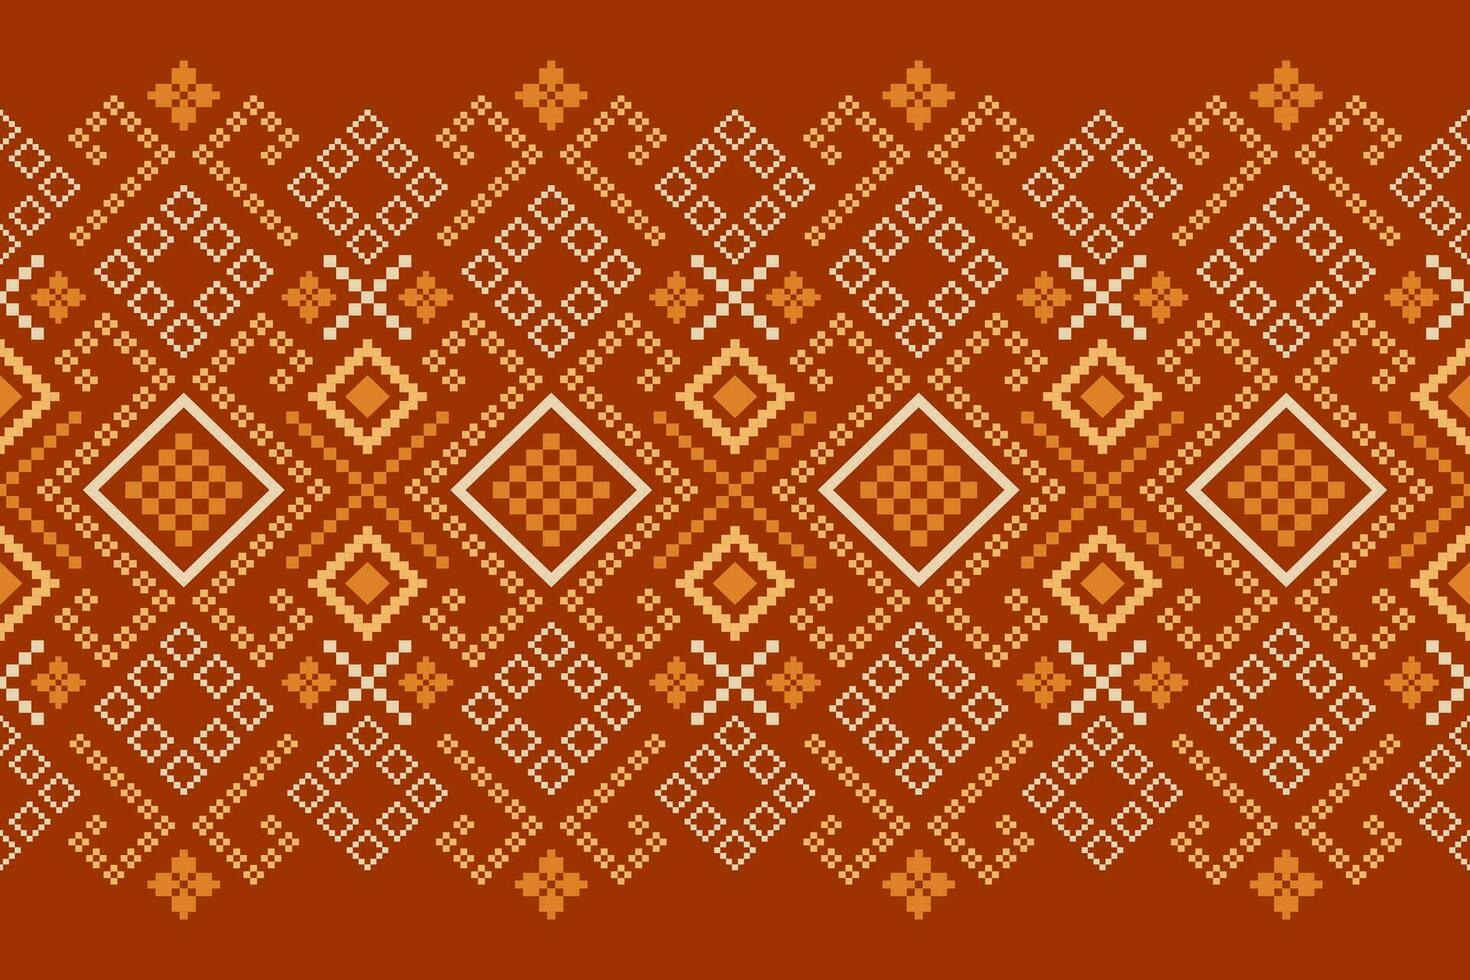 naranja añadas cruzar puntada tradicional étnico modelo cachemir flor ikat antecedentes resumen azteca africano indonesio indio sin costura modelo para tela impresión paño vestir alfombra cortinas y pareo de malasia vector